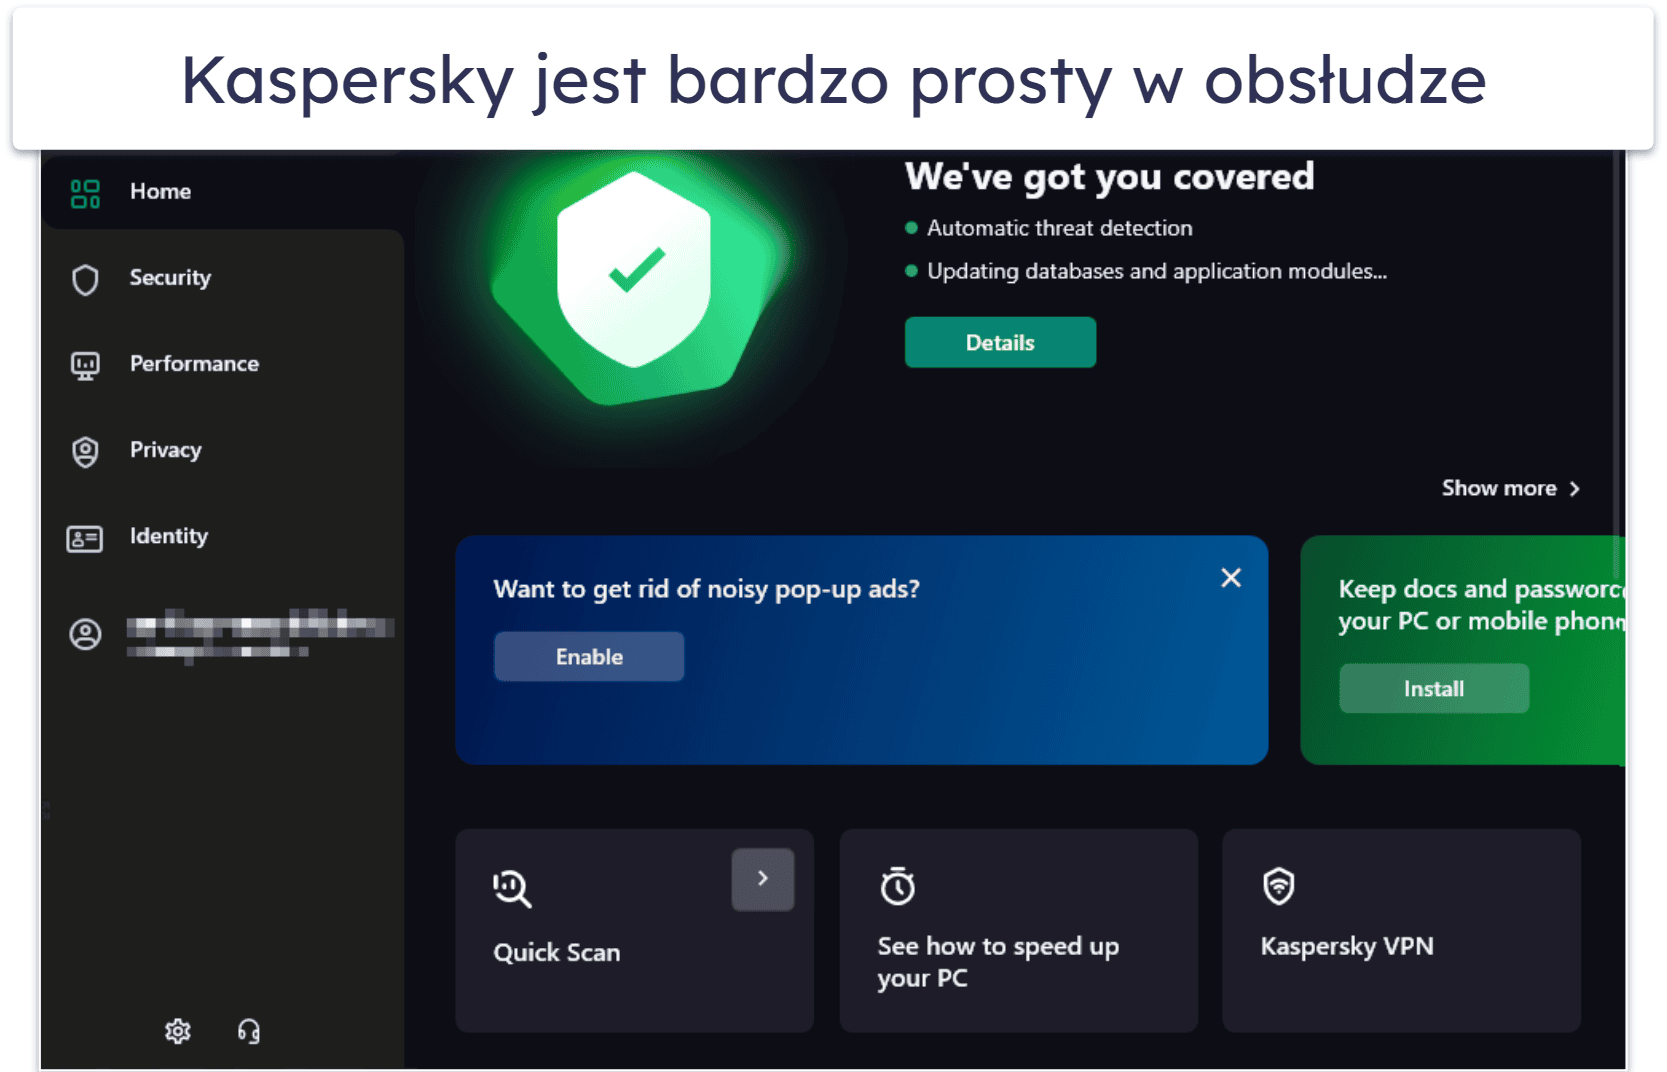 8. Kaspersky Premium — wyjątkowa łatwość użycia